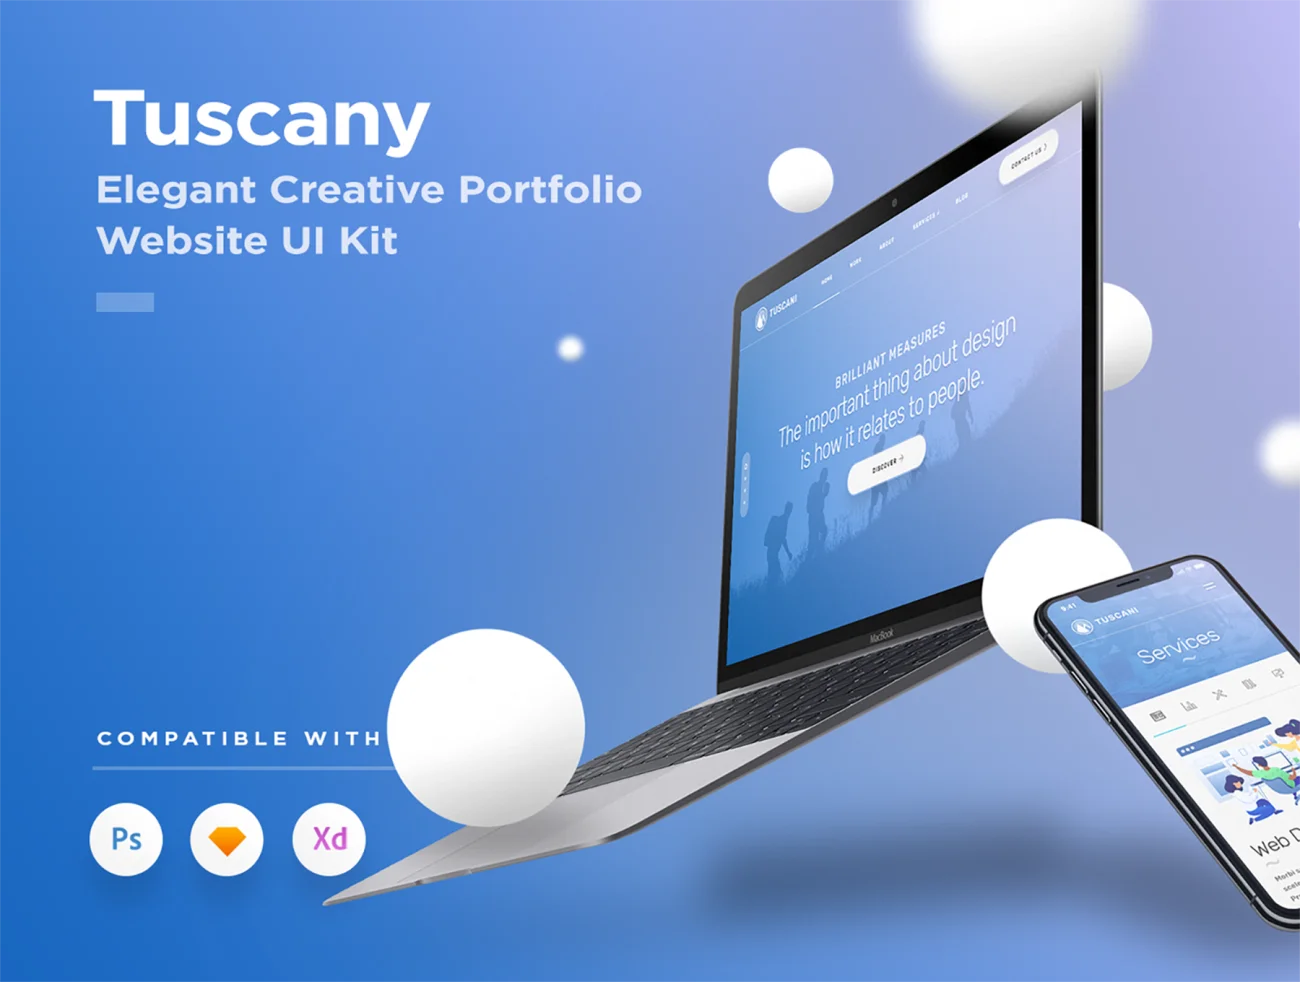 Tuscany WordPress 作品优雅展示主题模版-产品展示、优雅样机、创意展示、手机模型-到位啦UI